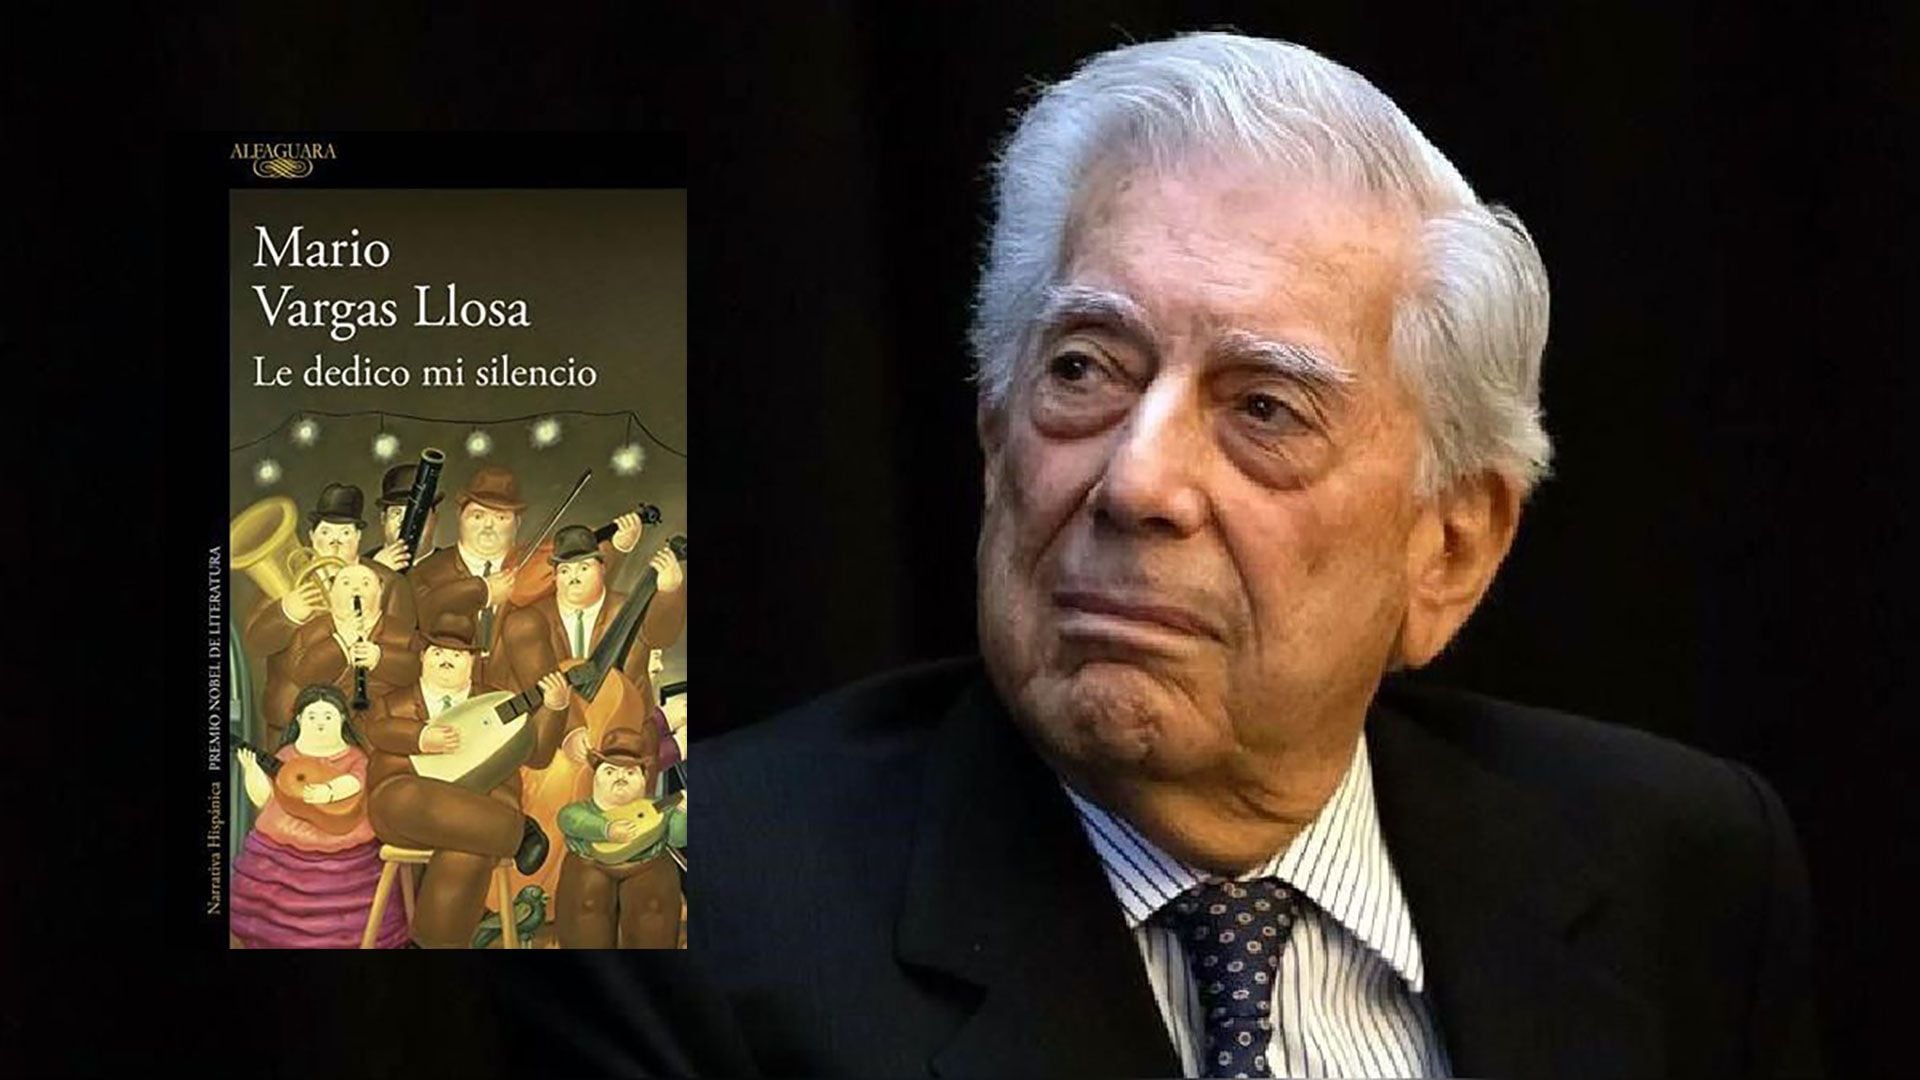 La última novela de Mario Vargas Llosa, le dedico mi silencio, está ambientada en Lima, Perú - crédito archivo Infobae Perú 